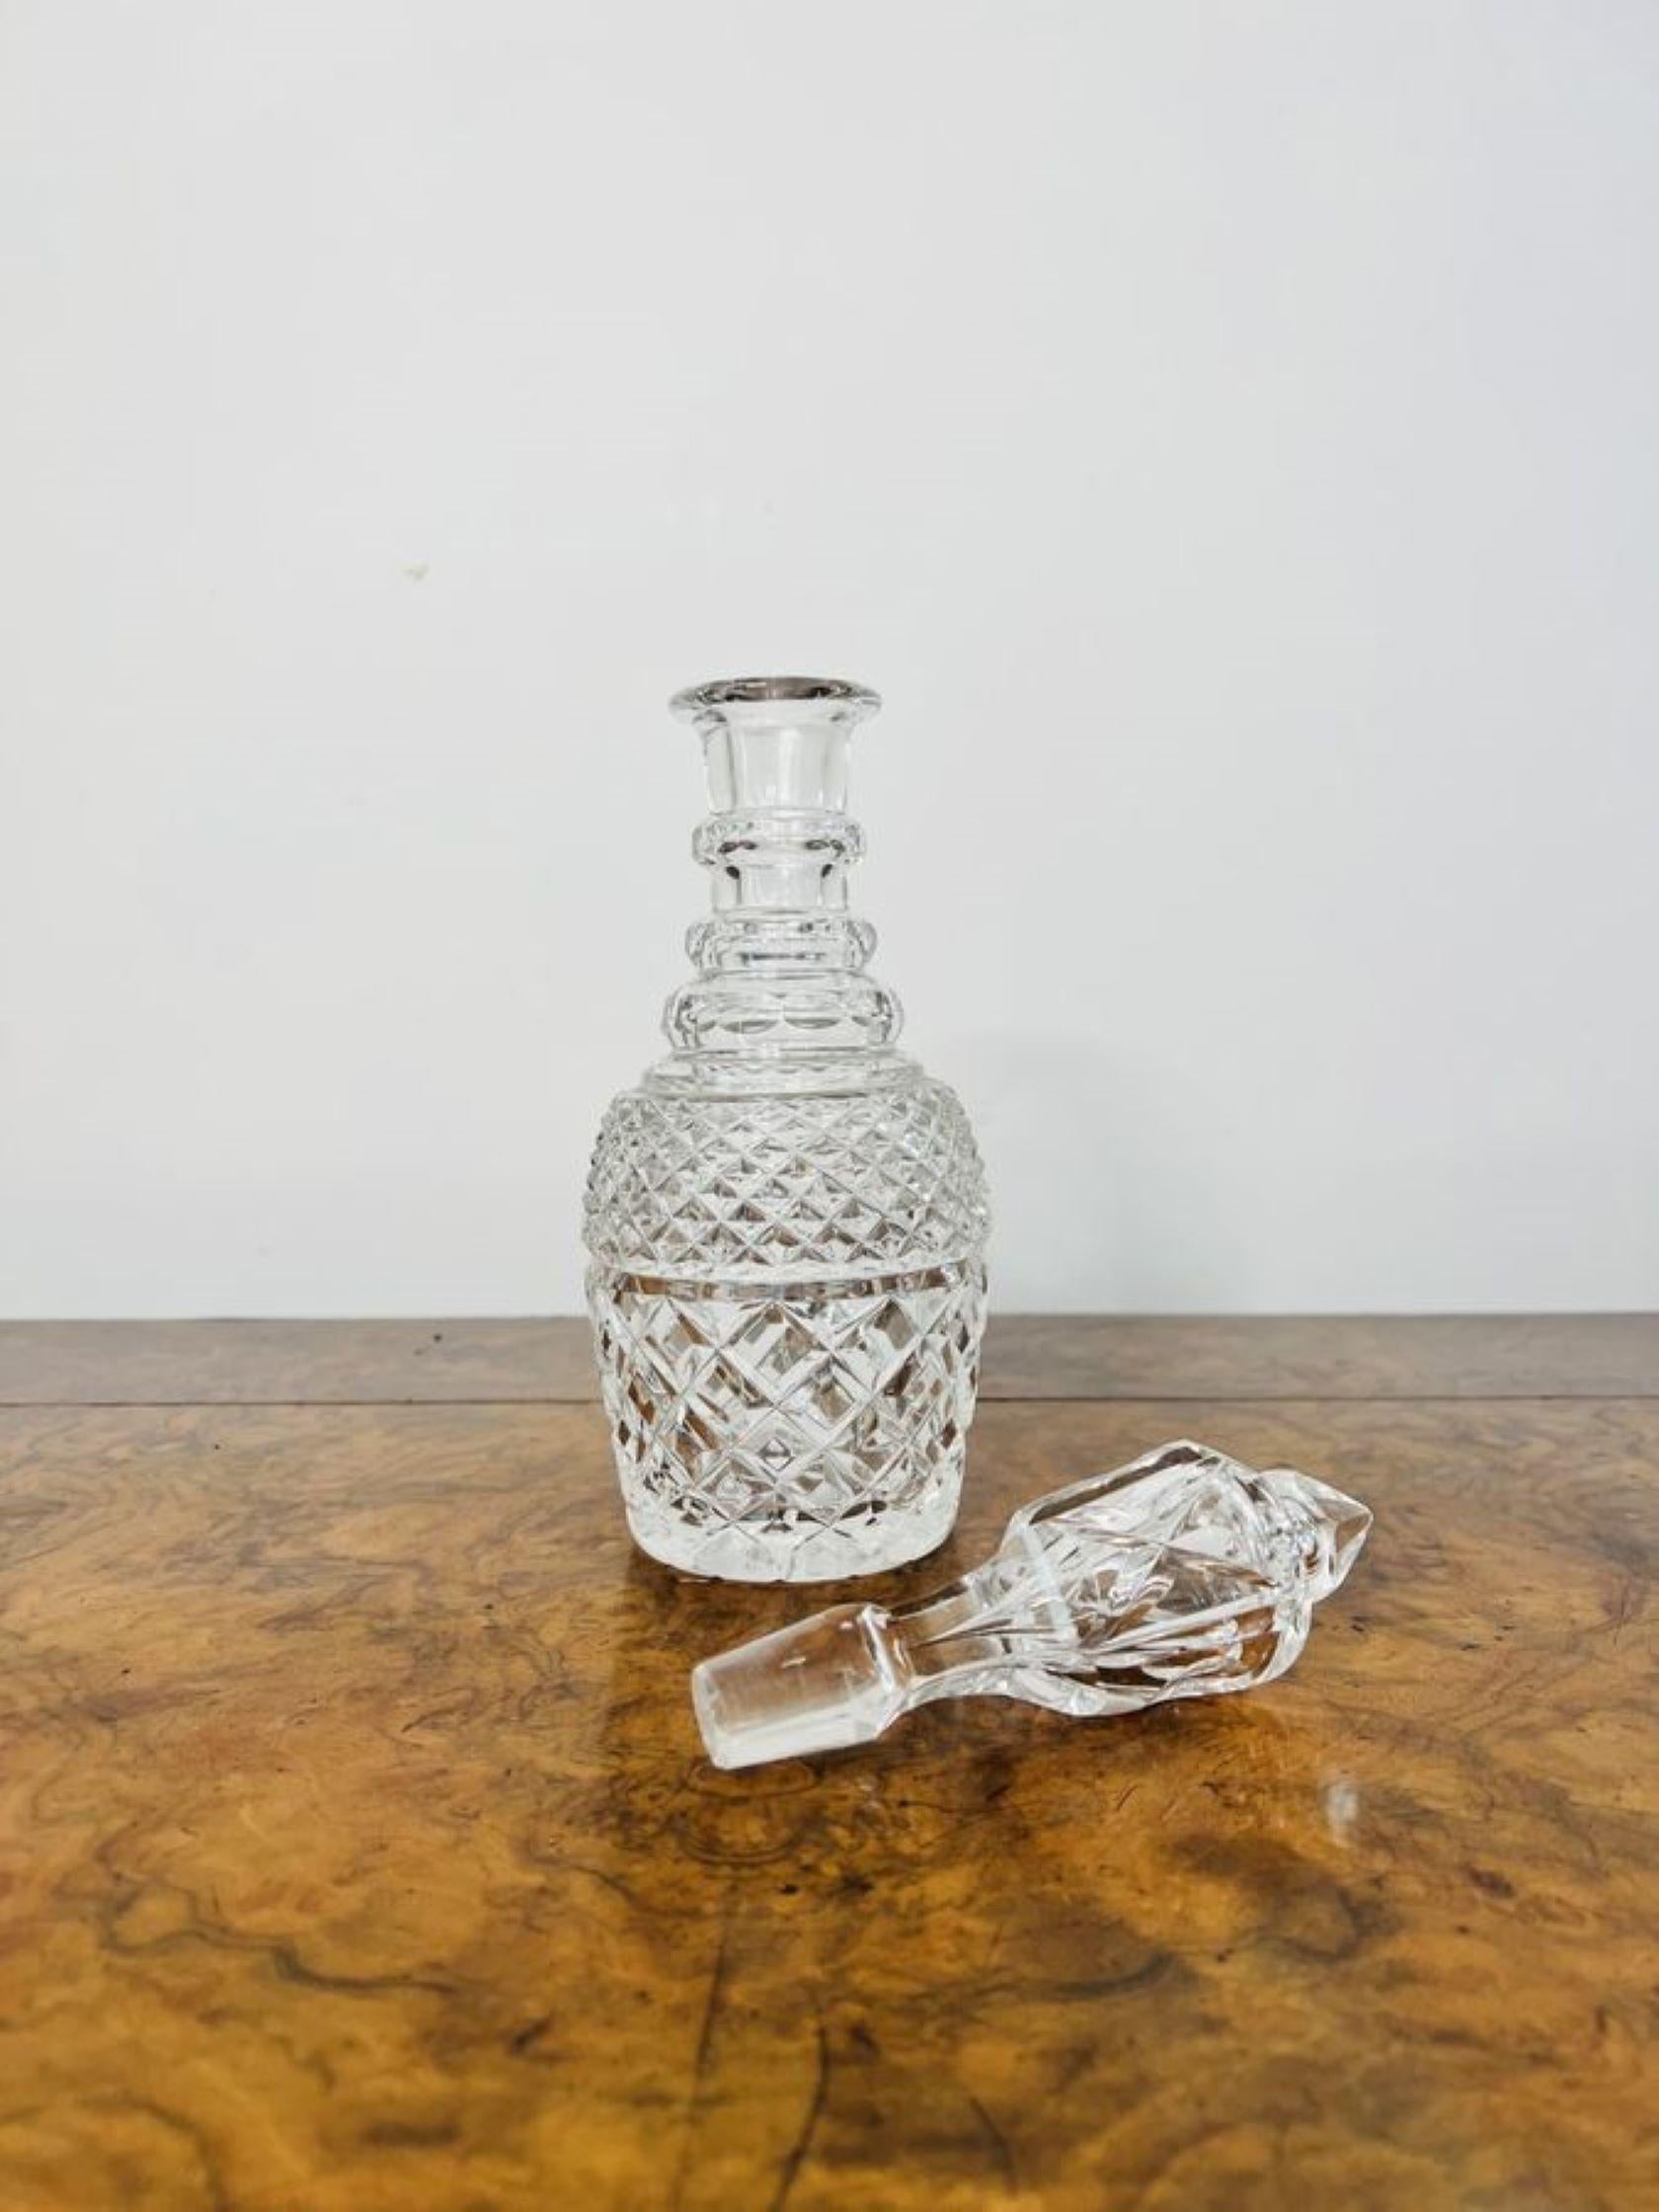 Quality antique Edwardian cut glass decanter having a quality cut glass decanter with a lovely shaped cut glass stopper.

D. 1900